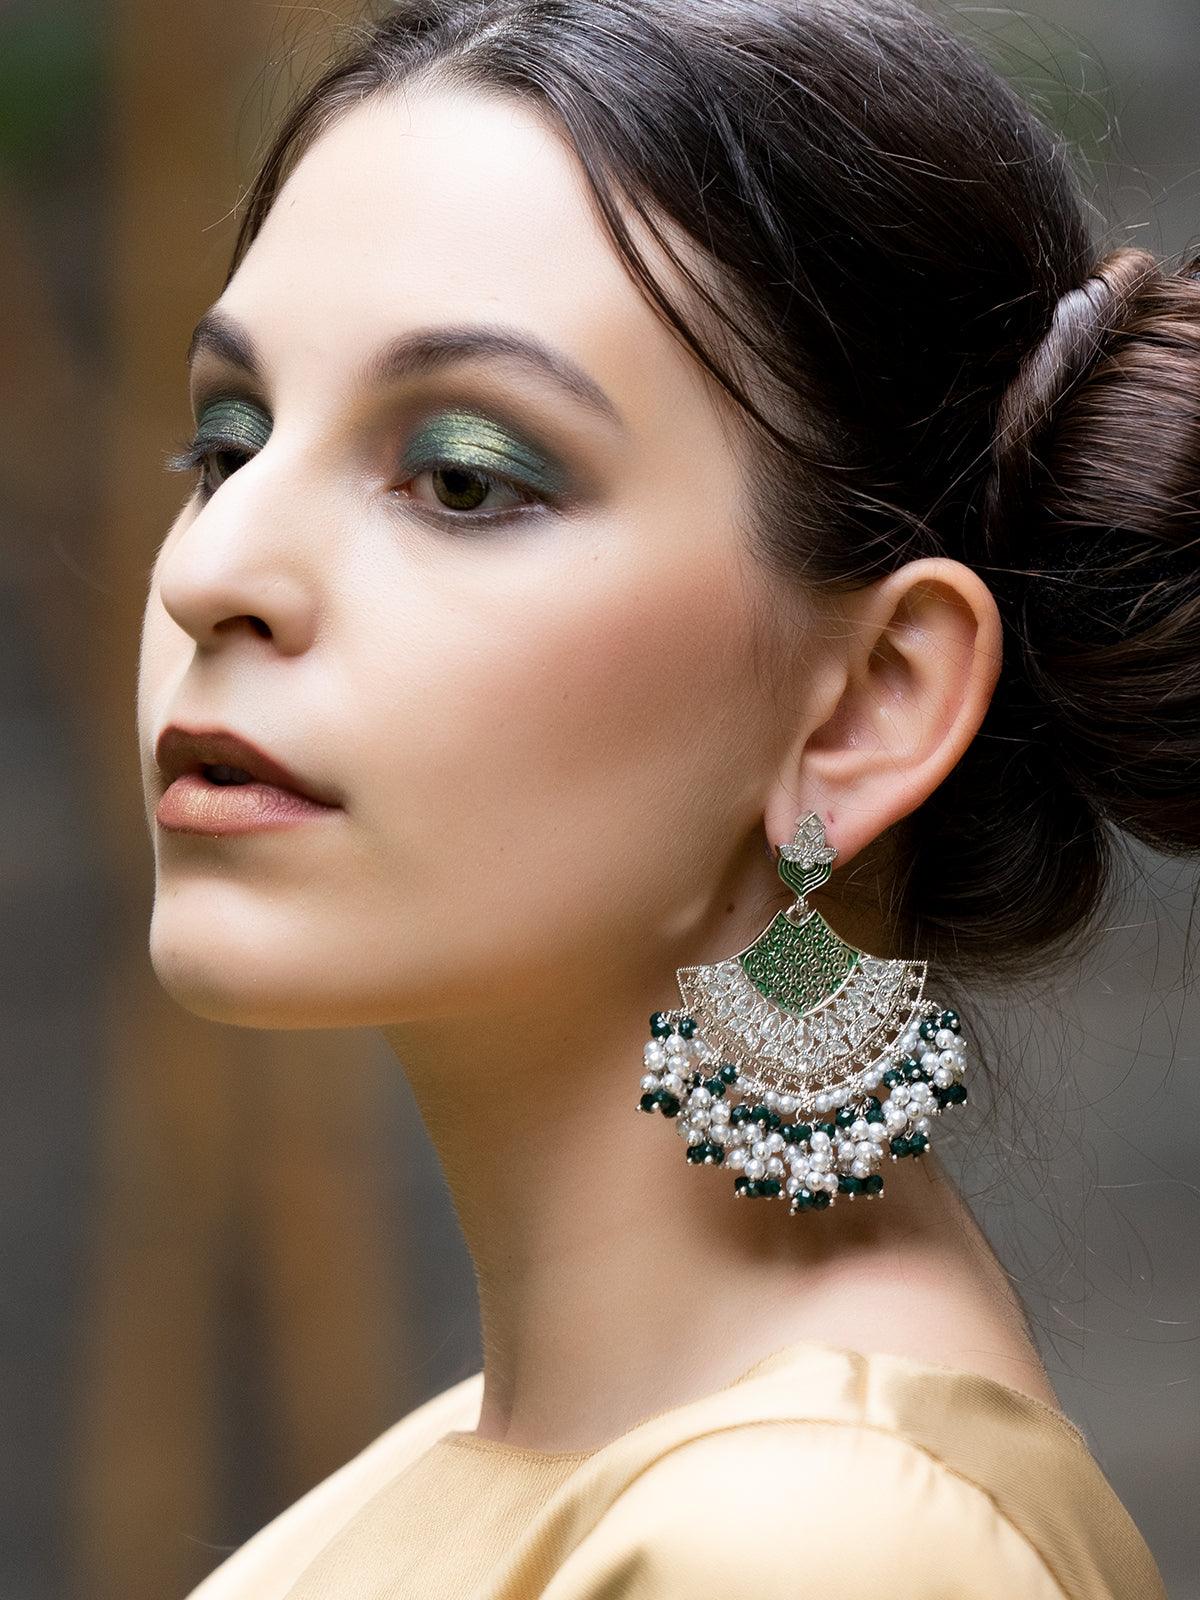 Women's Elegant Silver Tone Half-Moon Bottle Green Dangle Earrings! - Odette